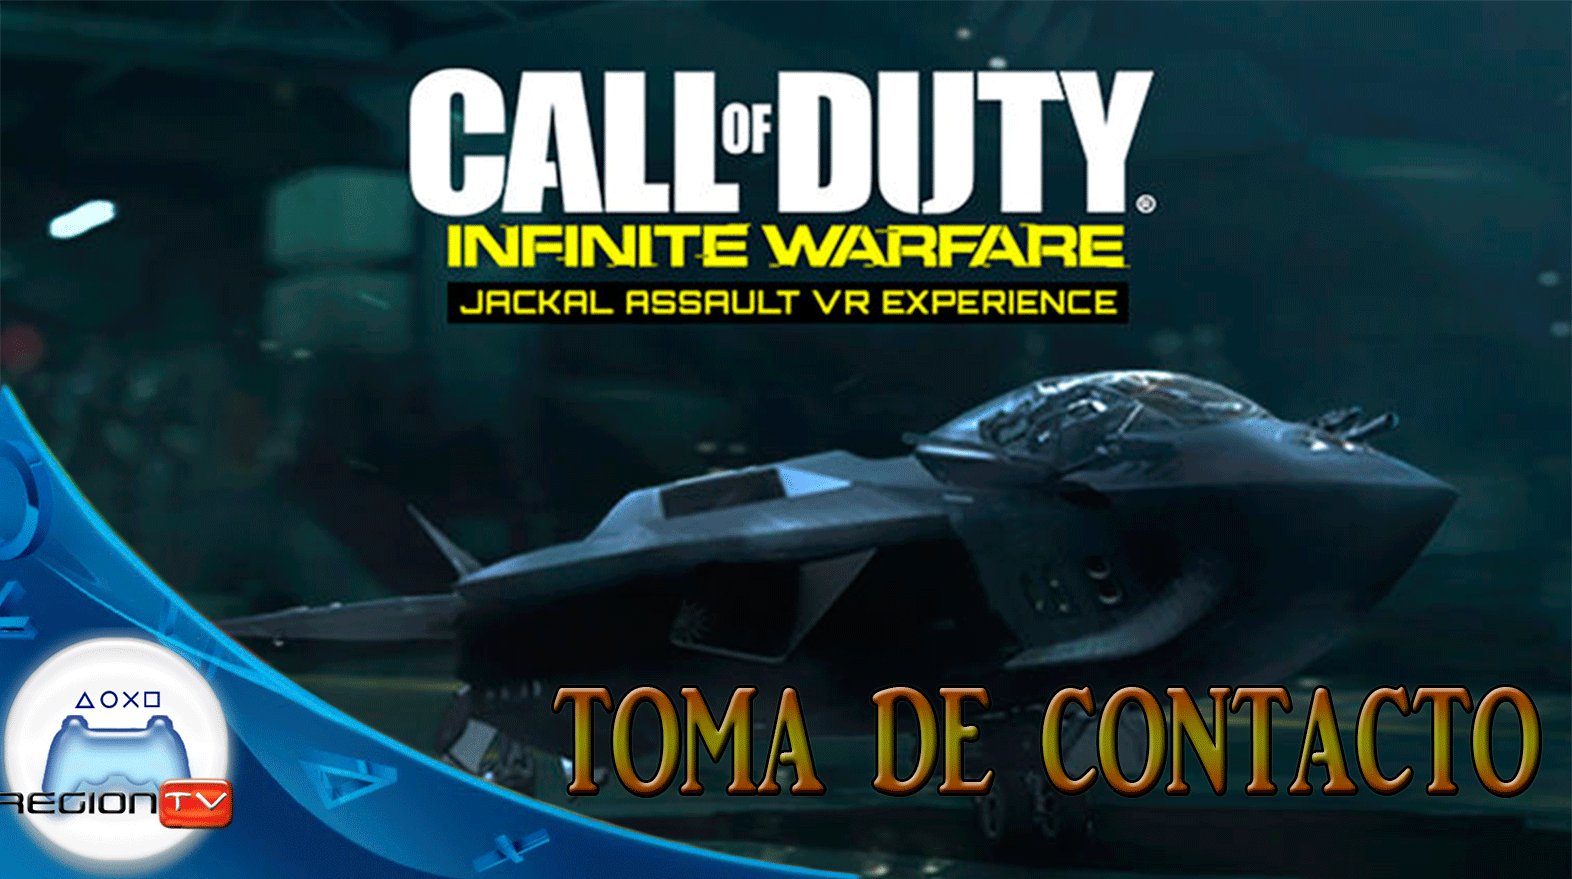 TOMA DE CONTACTO | COD Jackal Assault VR